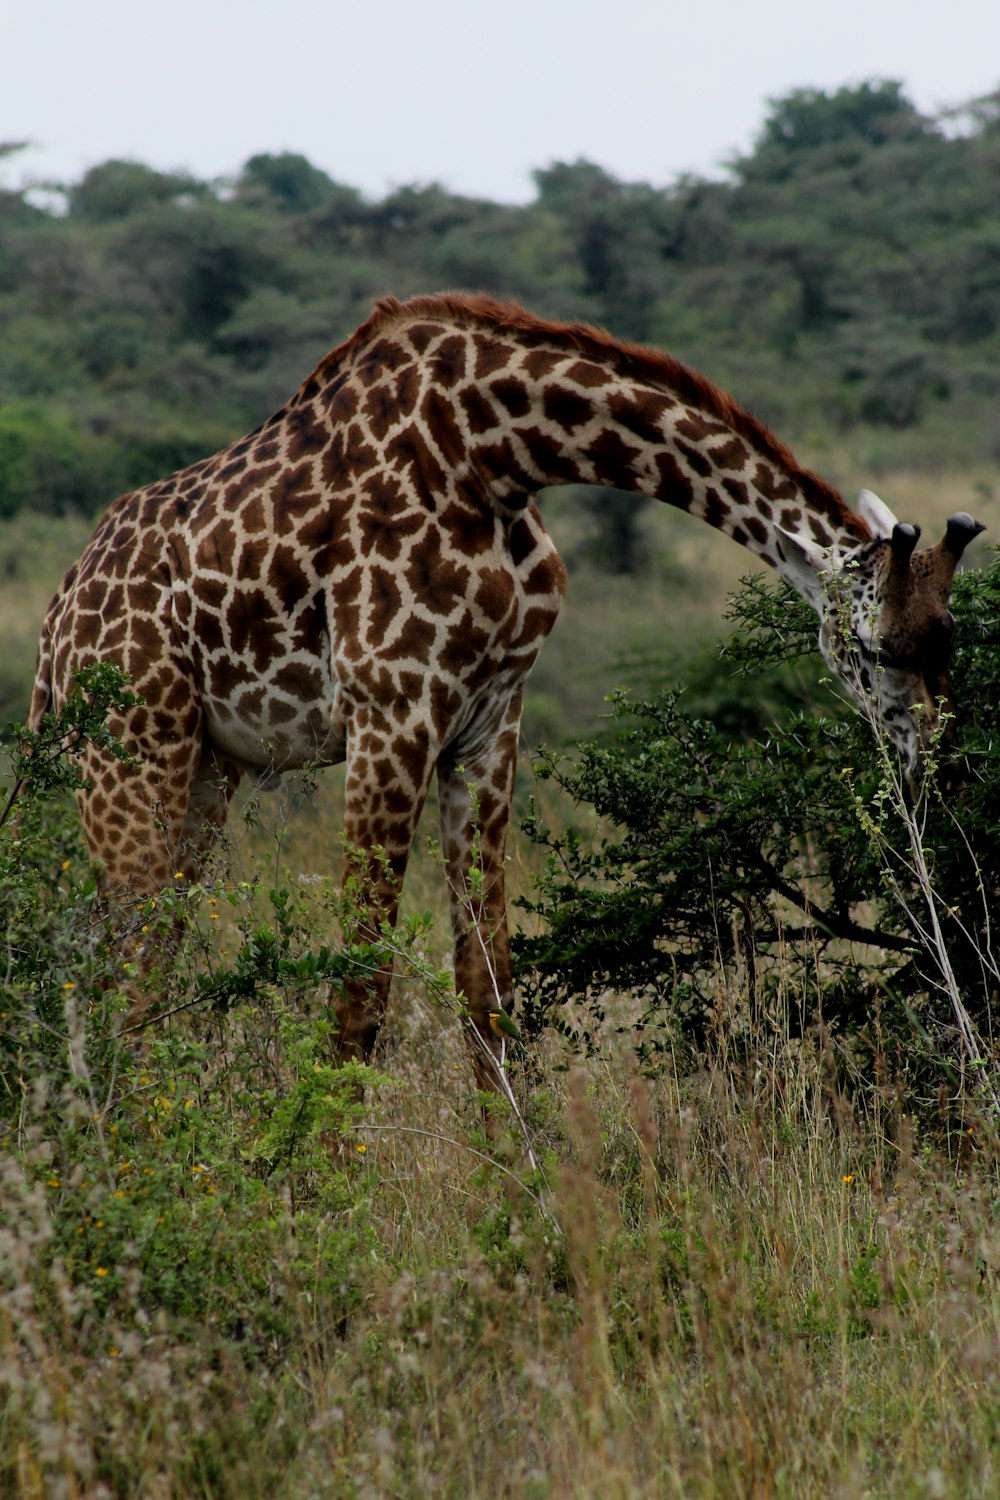 brown giraffe eating grass during daytime